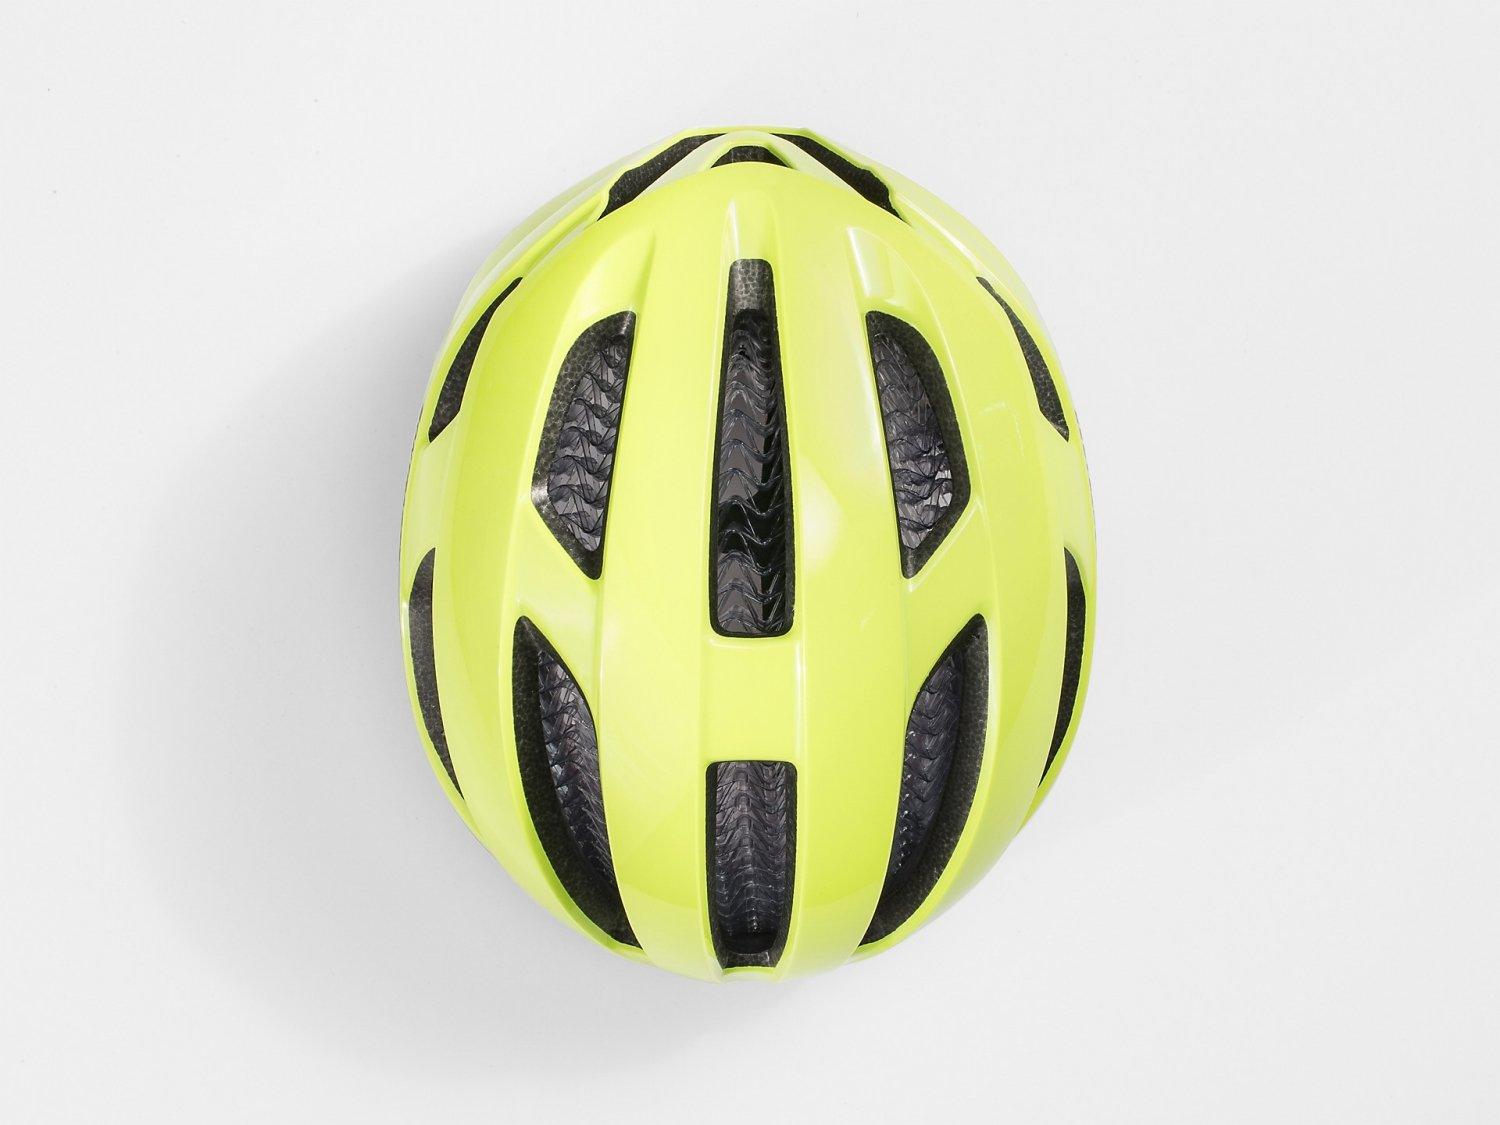 Bontrager Starvos WaveCel Cycling Helmet - Liquid-Life